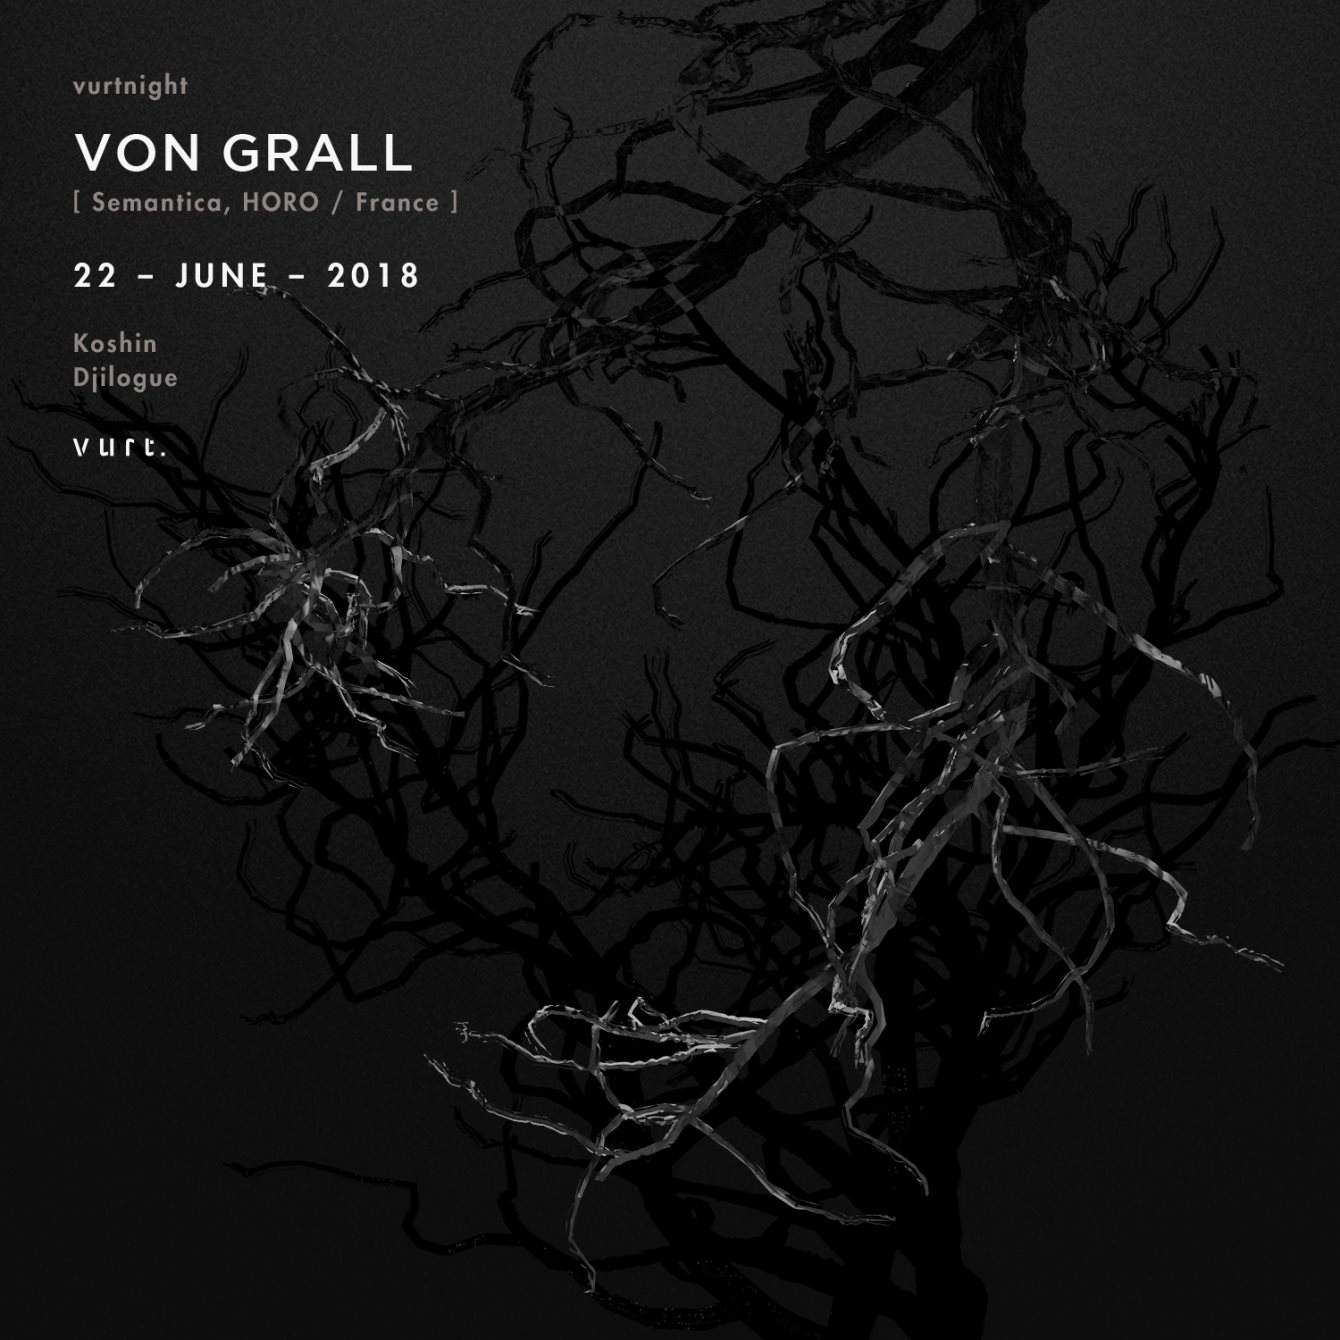 vurtnight with Von Grall - Página frontal